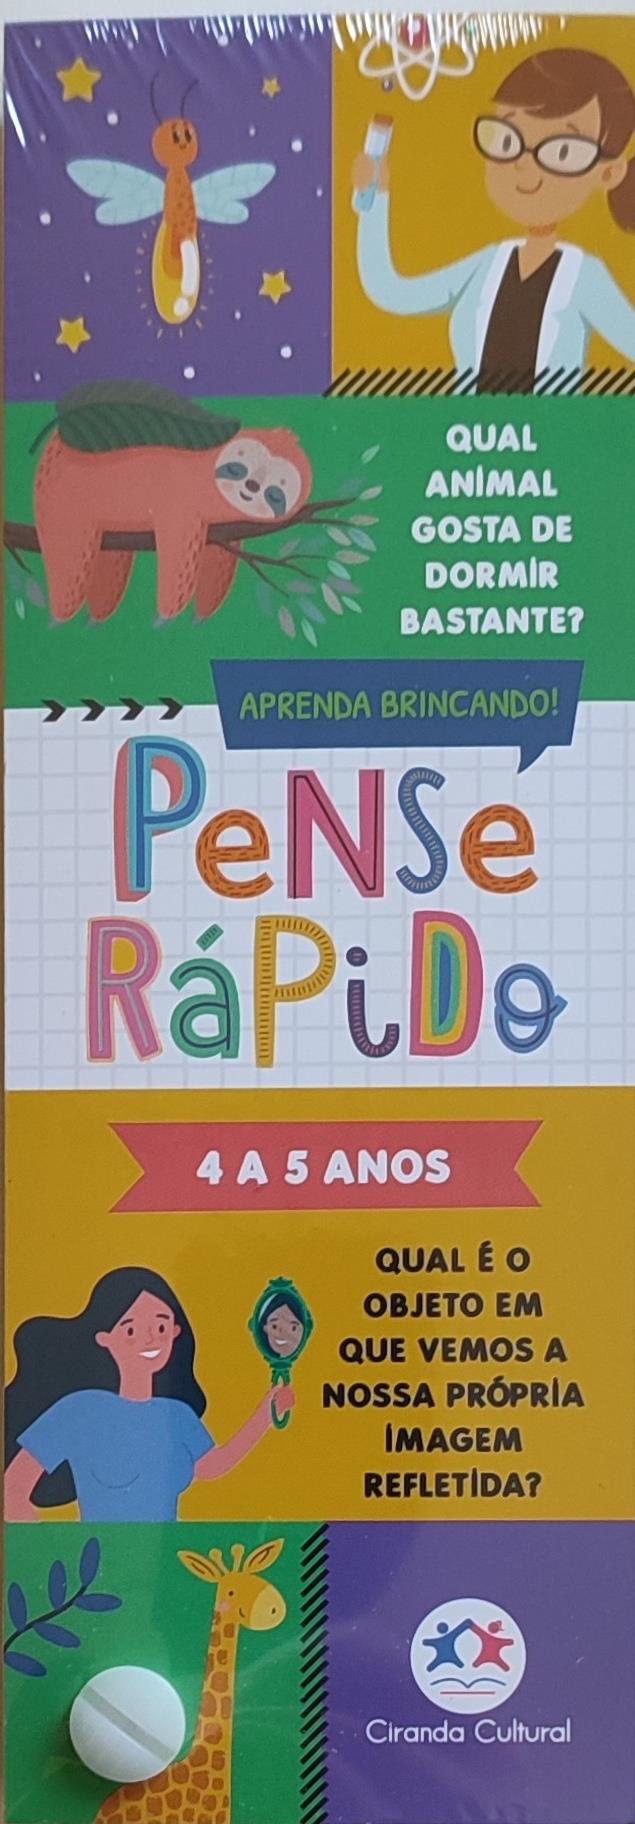 PENSE RPIDO - 4 A 5 ANOS